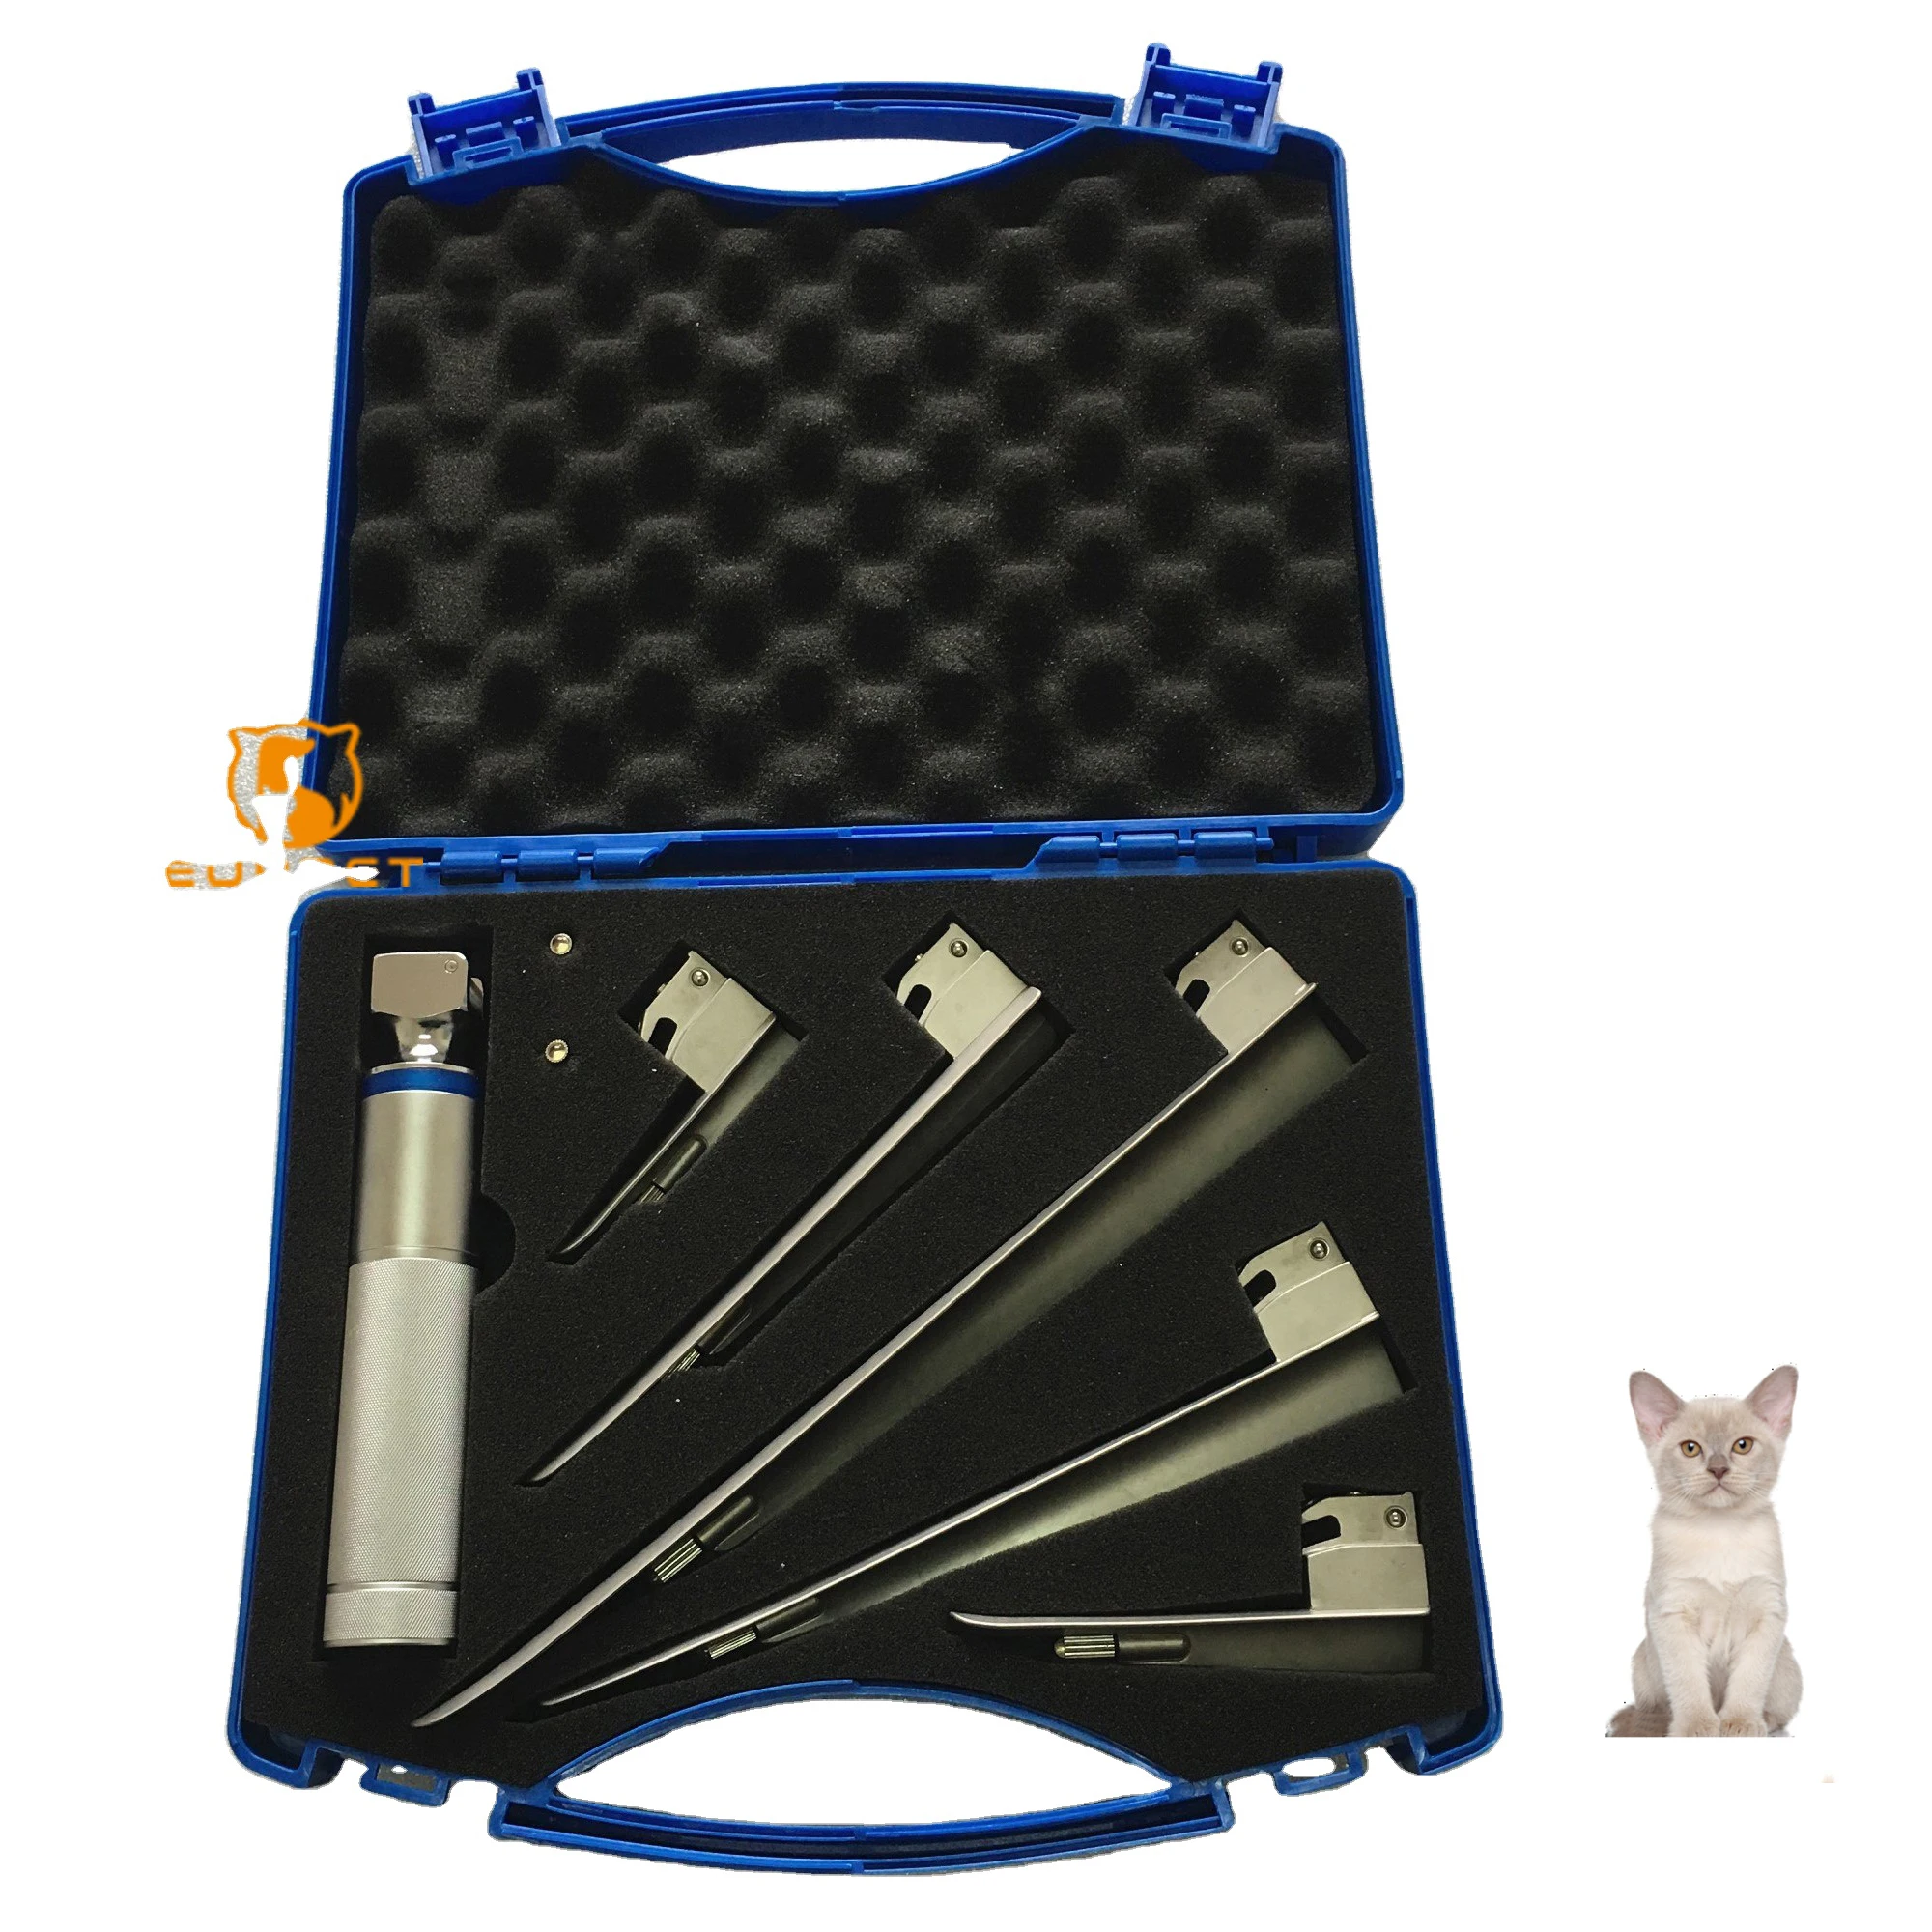 

EURPET Professional Veterinary Equipment 304 Medical Stainless Steel Flexible Veterinary Laryngoscope